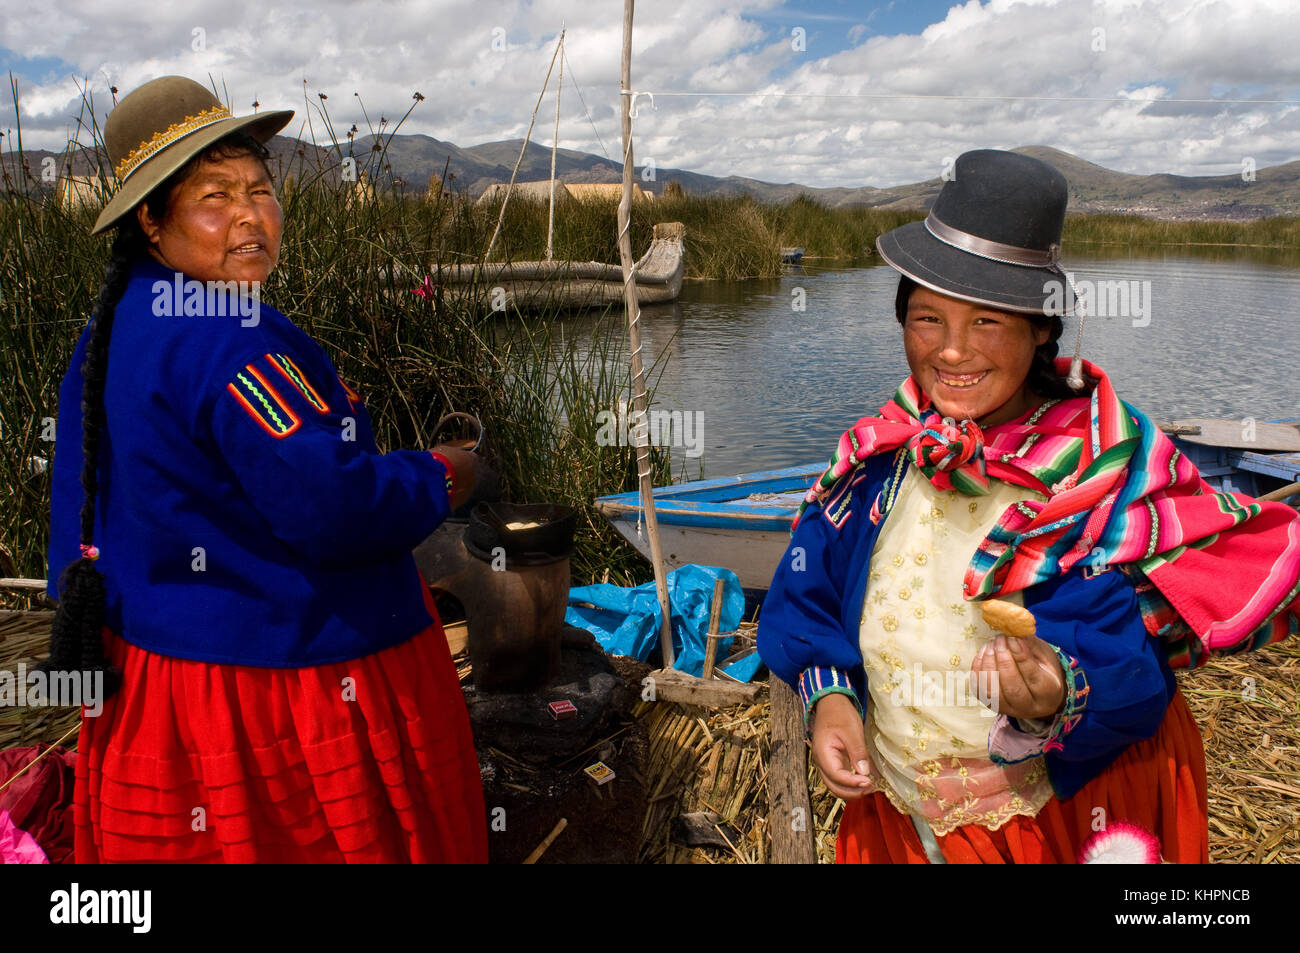 L'île uros, lac Titicaca, Pérou, Amérique du Sud. deux femmes vêtues de costumes typiques de la région sur l'une des îles Uros. Banque D'Images